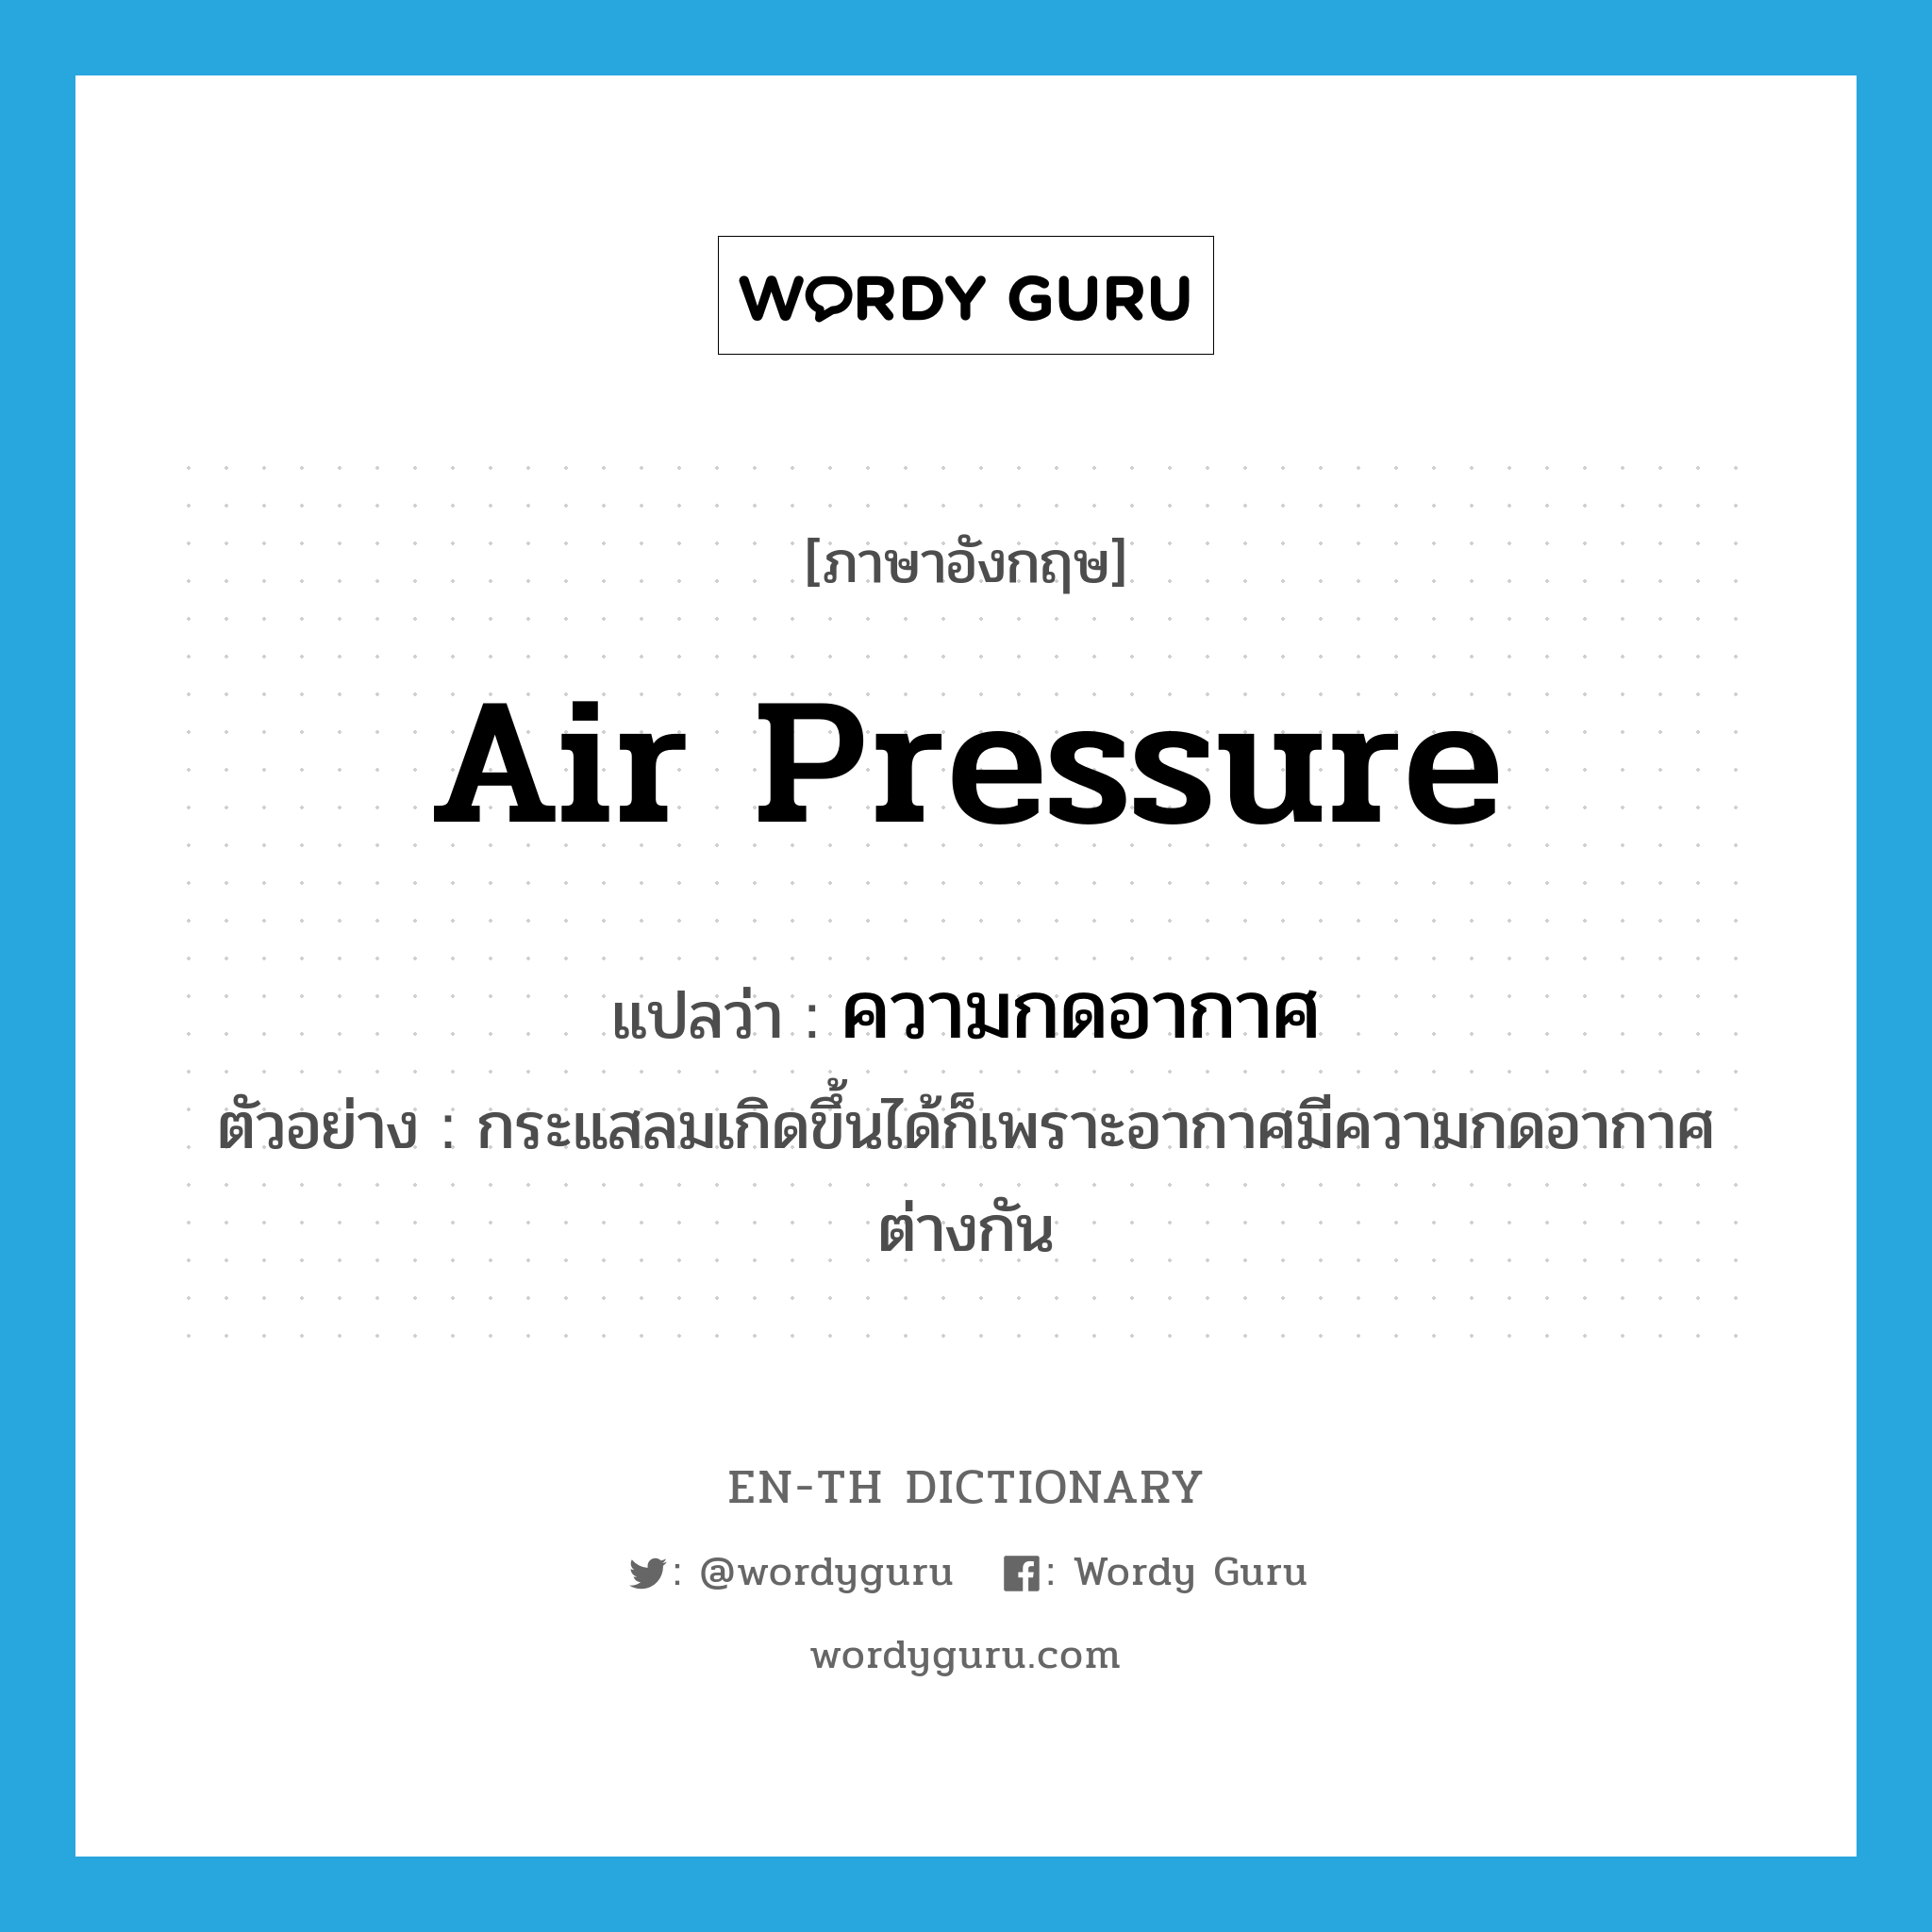 air pressure แปลว่า?, คำศัพท์ภาษาอังกฤษ air pressure แปลว่า ความกดอากาศ ประเภท N ตัวอย่าง กระแสลมเกิดขึ้นได้ก็เพราะอากาศมีความกดอากาศต่างกัน หมวด N